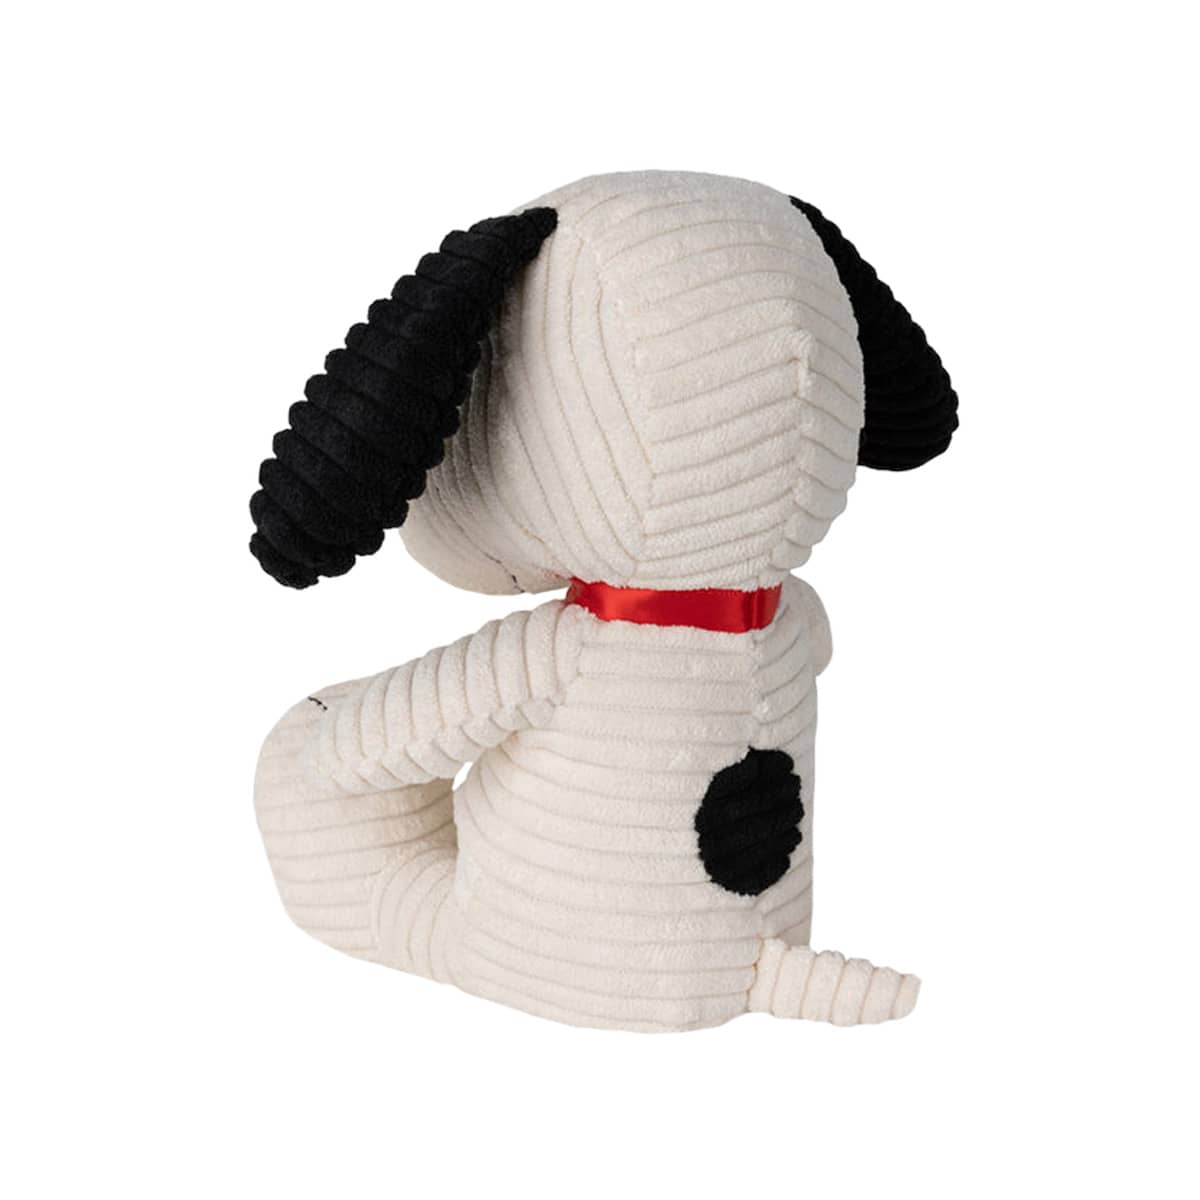 Bon Bon Toys Snoopy Sitting Corduroy Plush Toy - Cream